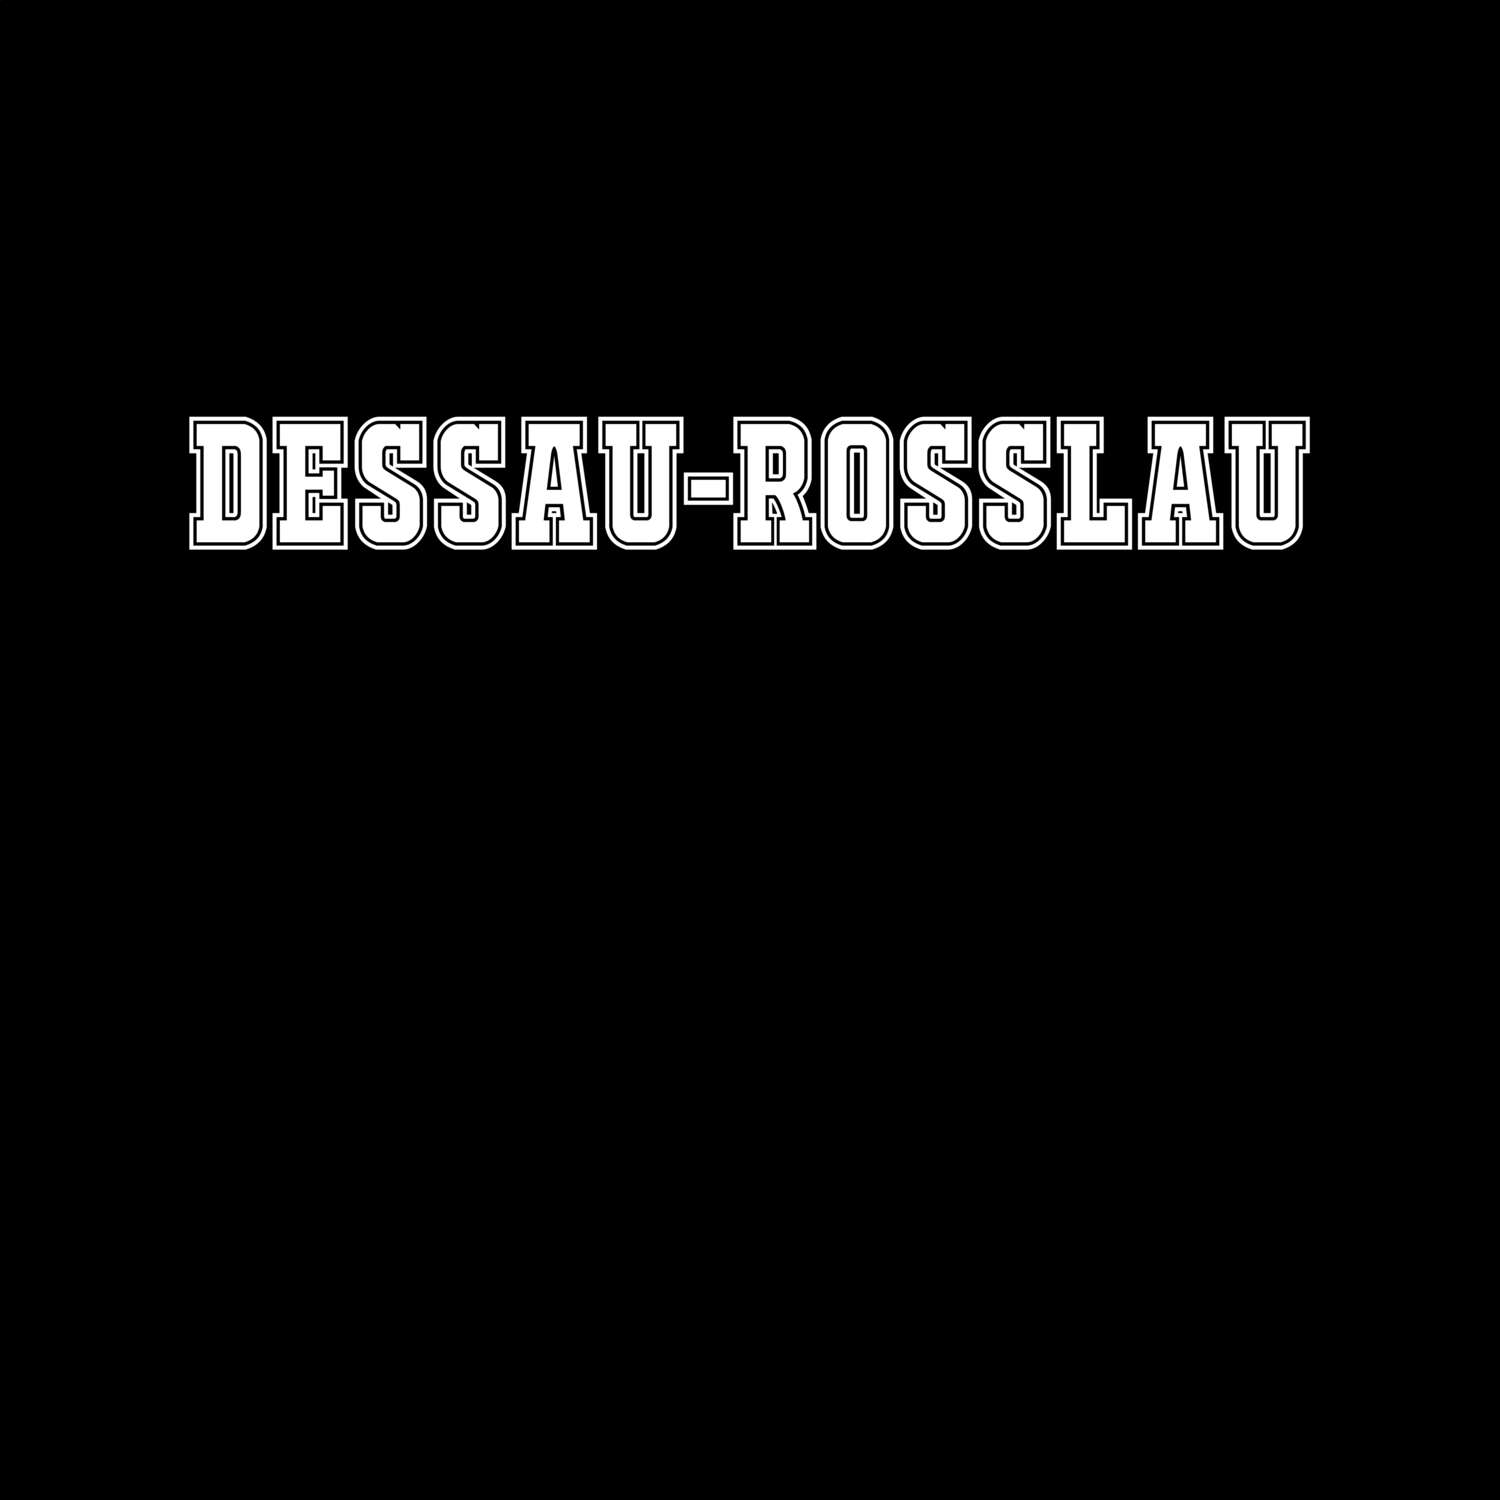 Dessau-Roßlau T-Shirt »Classic«